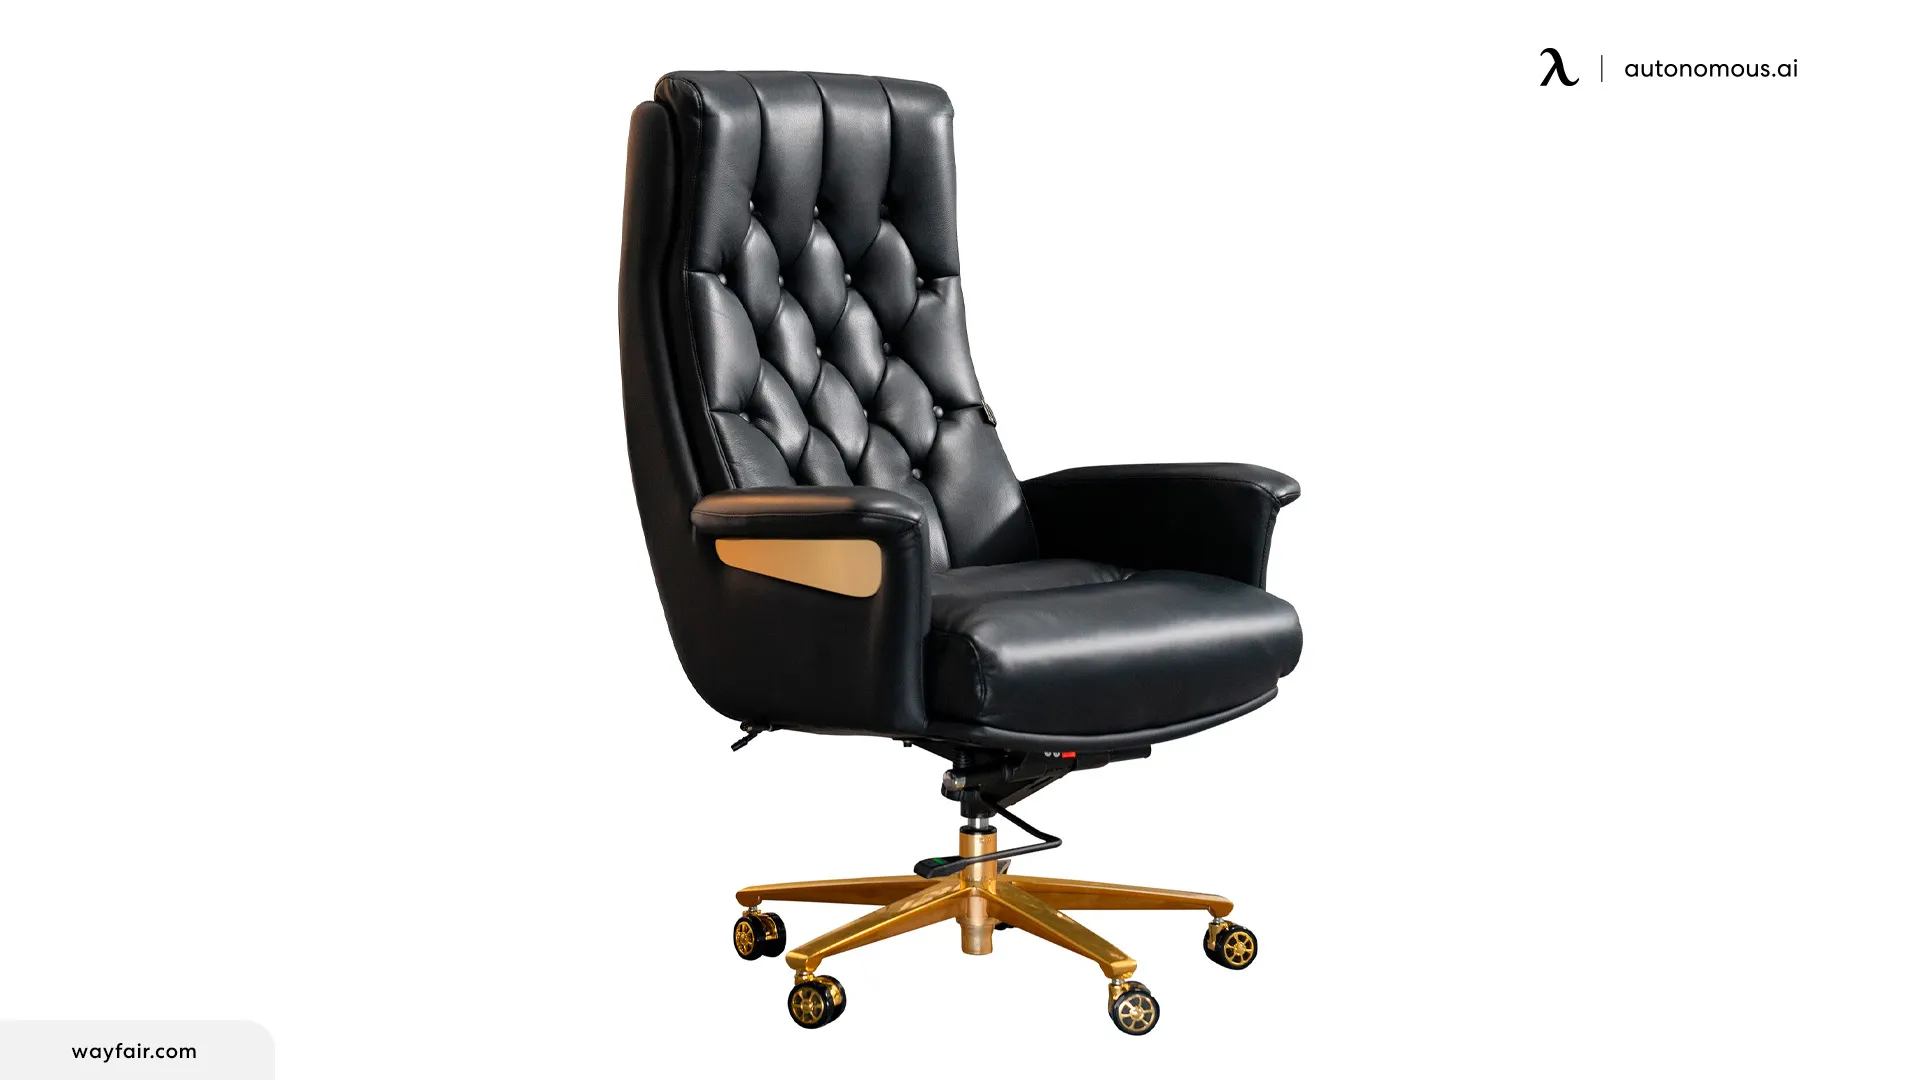 https://cdn.autonomous.ai/production/ecm/231026/Top-Black-Desk-Chairs-with-Wheels-Comfort-Mobility-Reviewed4.webp